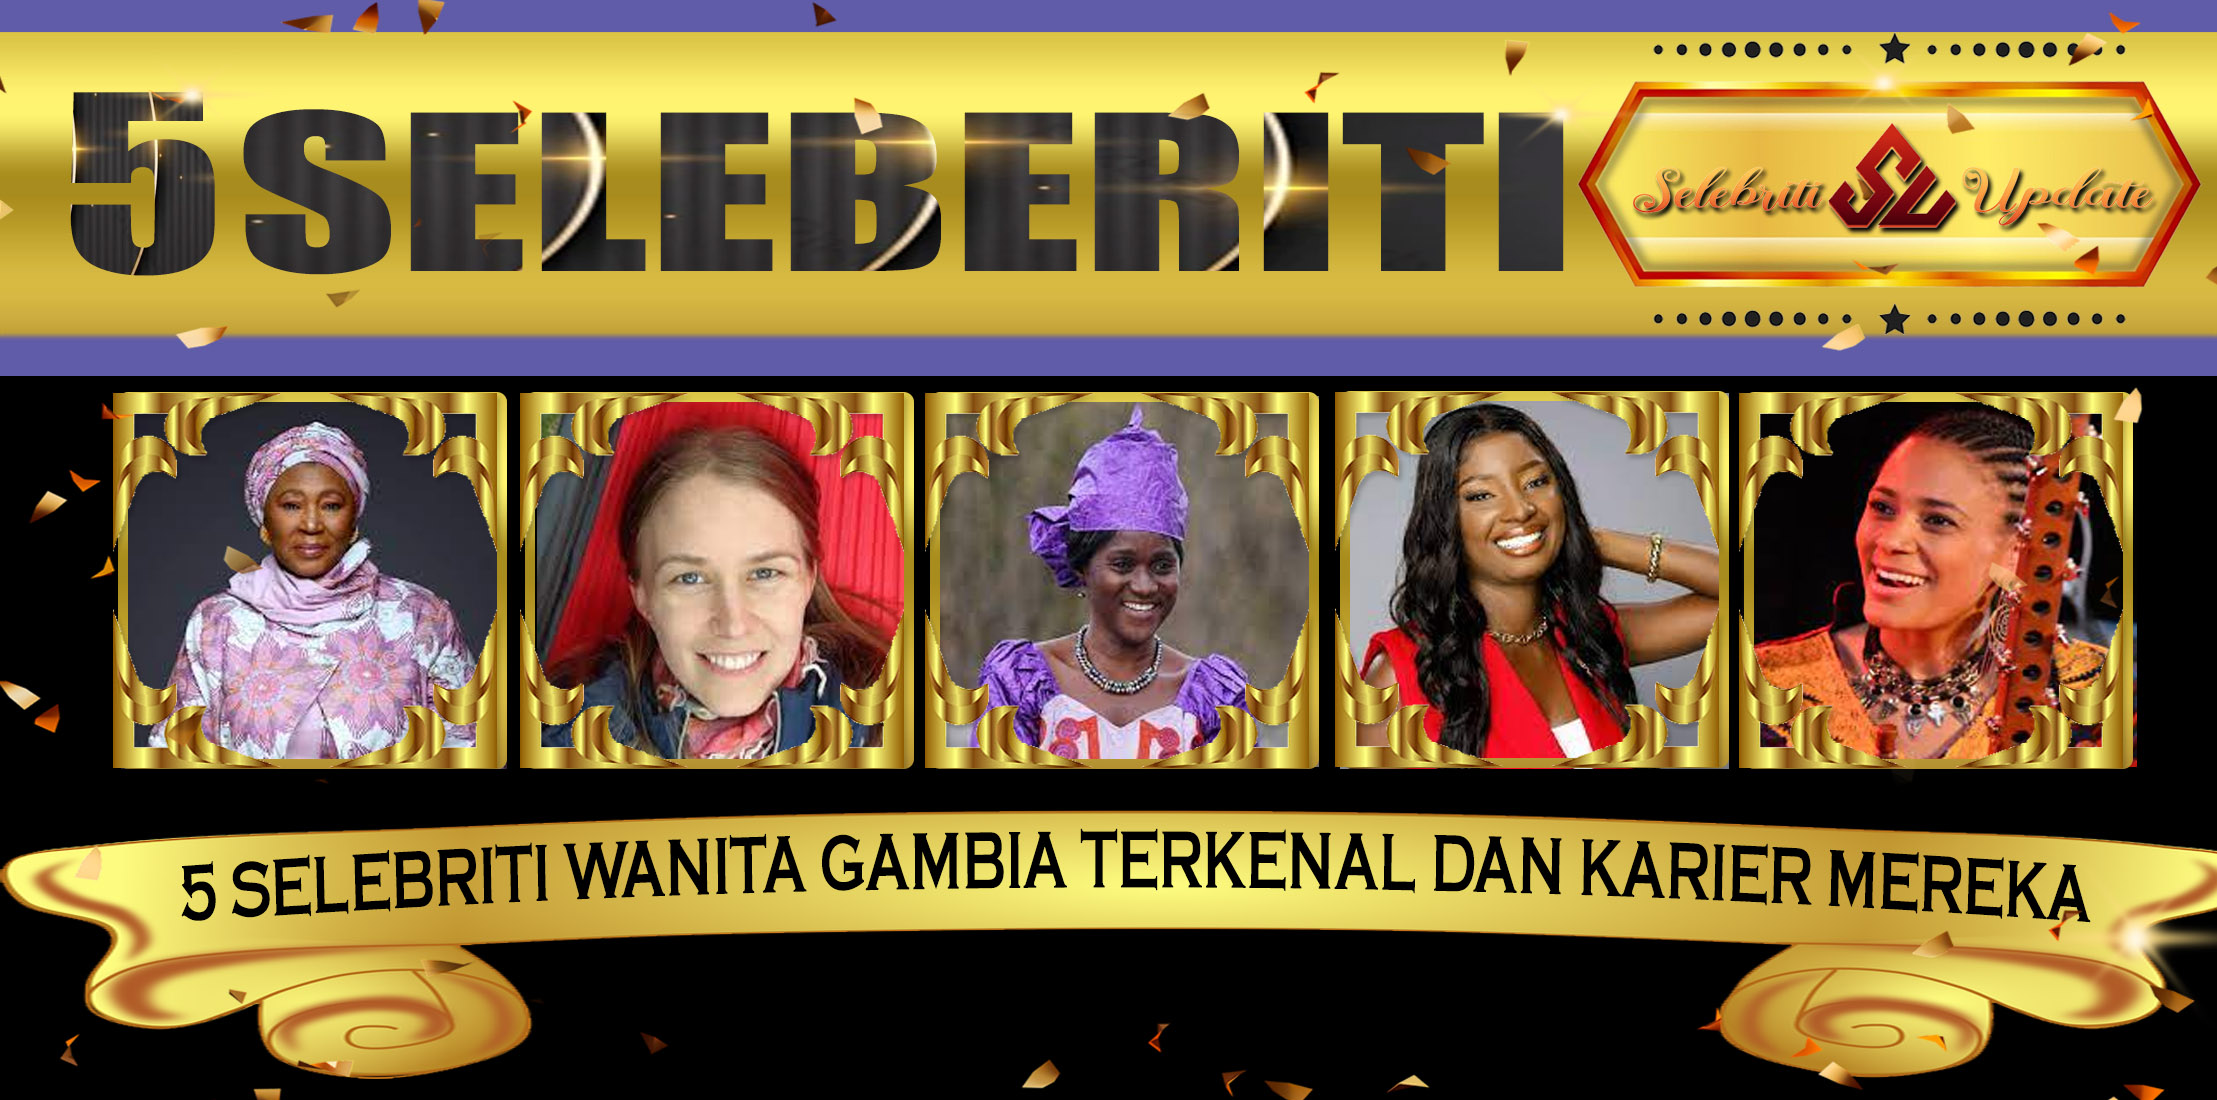 5 Selebriti Wanita Gambia Terkenal dan Karier Mereka